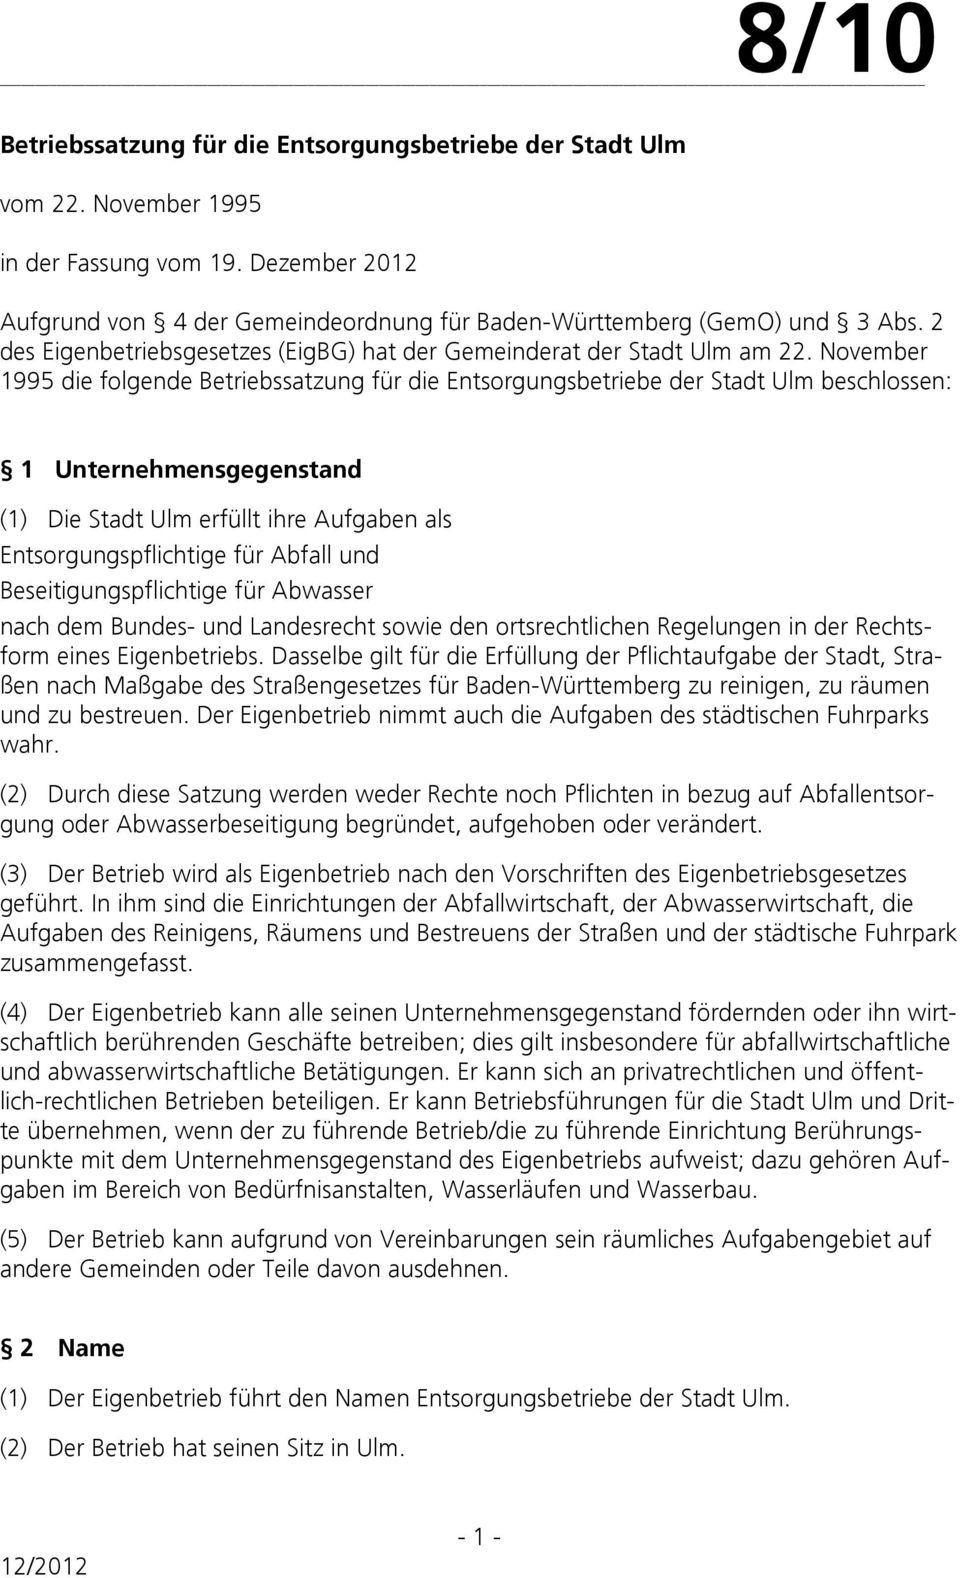 November 1995 die folgende beschlossen: 1 Unternehmensgegenstand (1) Die Stadt Ulm erfüllt ihre Aufgaben als Entsorgungspflichtige für Abfall und Beseitigungspflichtige für Abwasser nach dem Bundes-